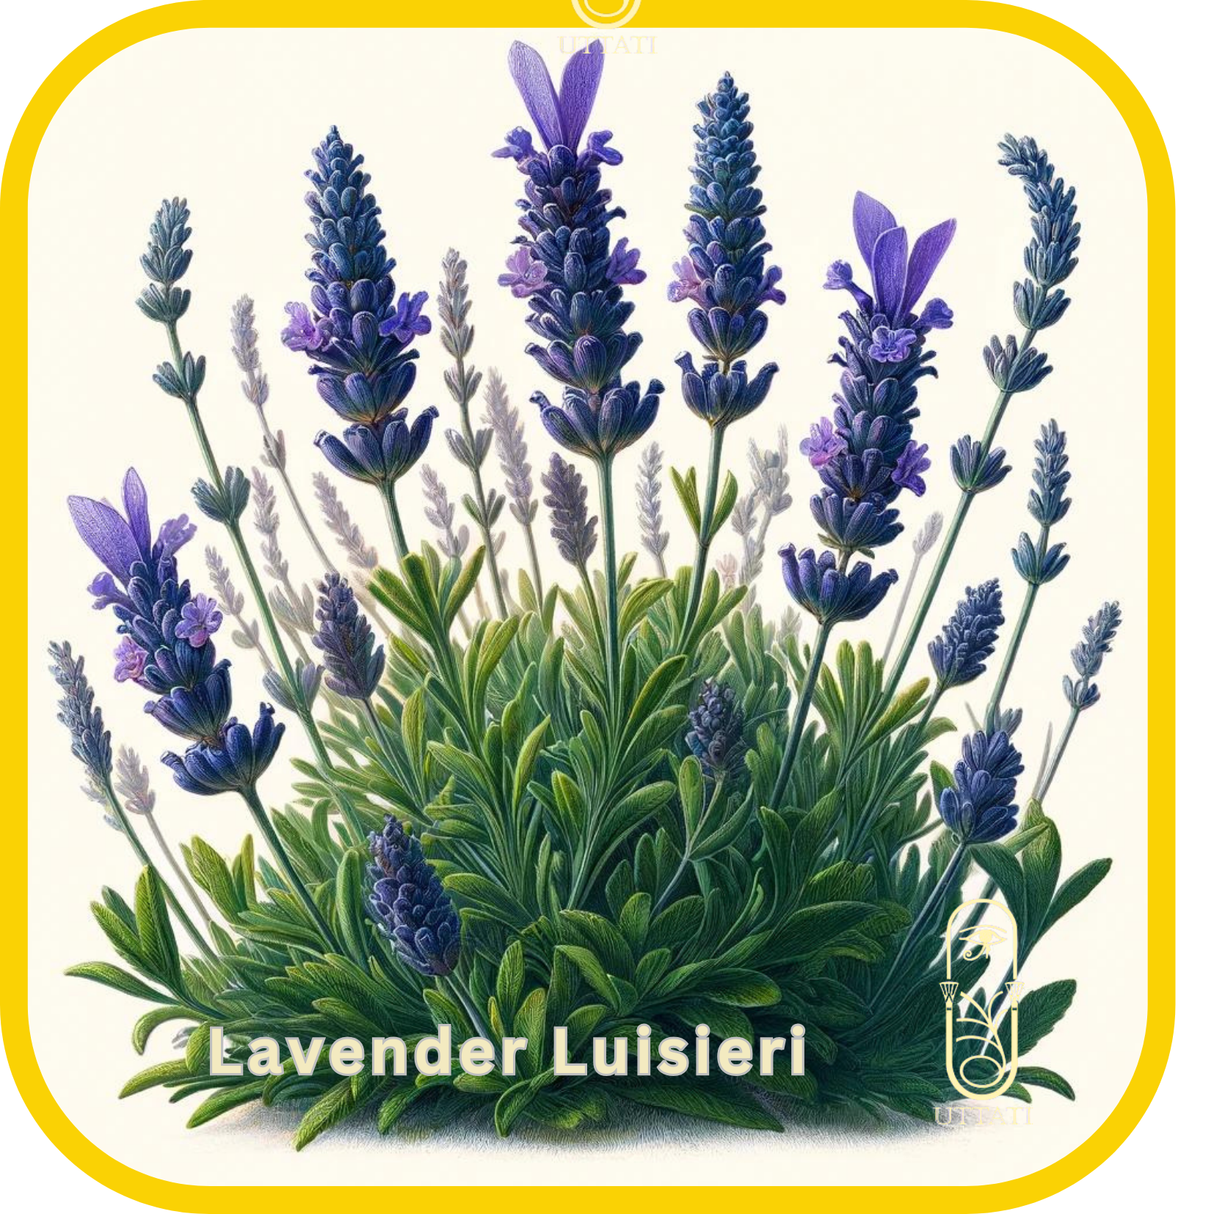 Lavender Luisieri